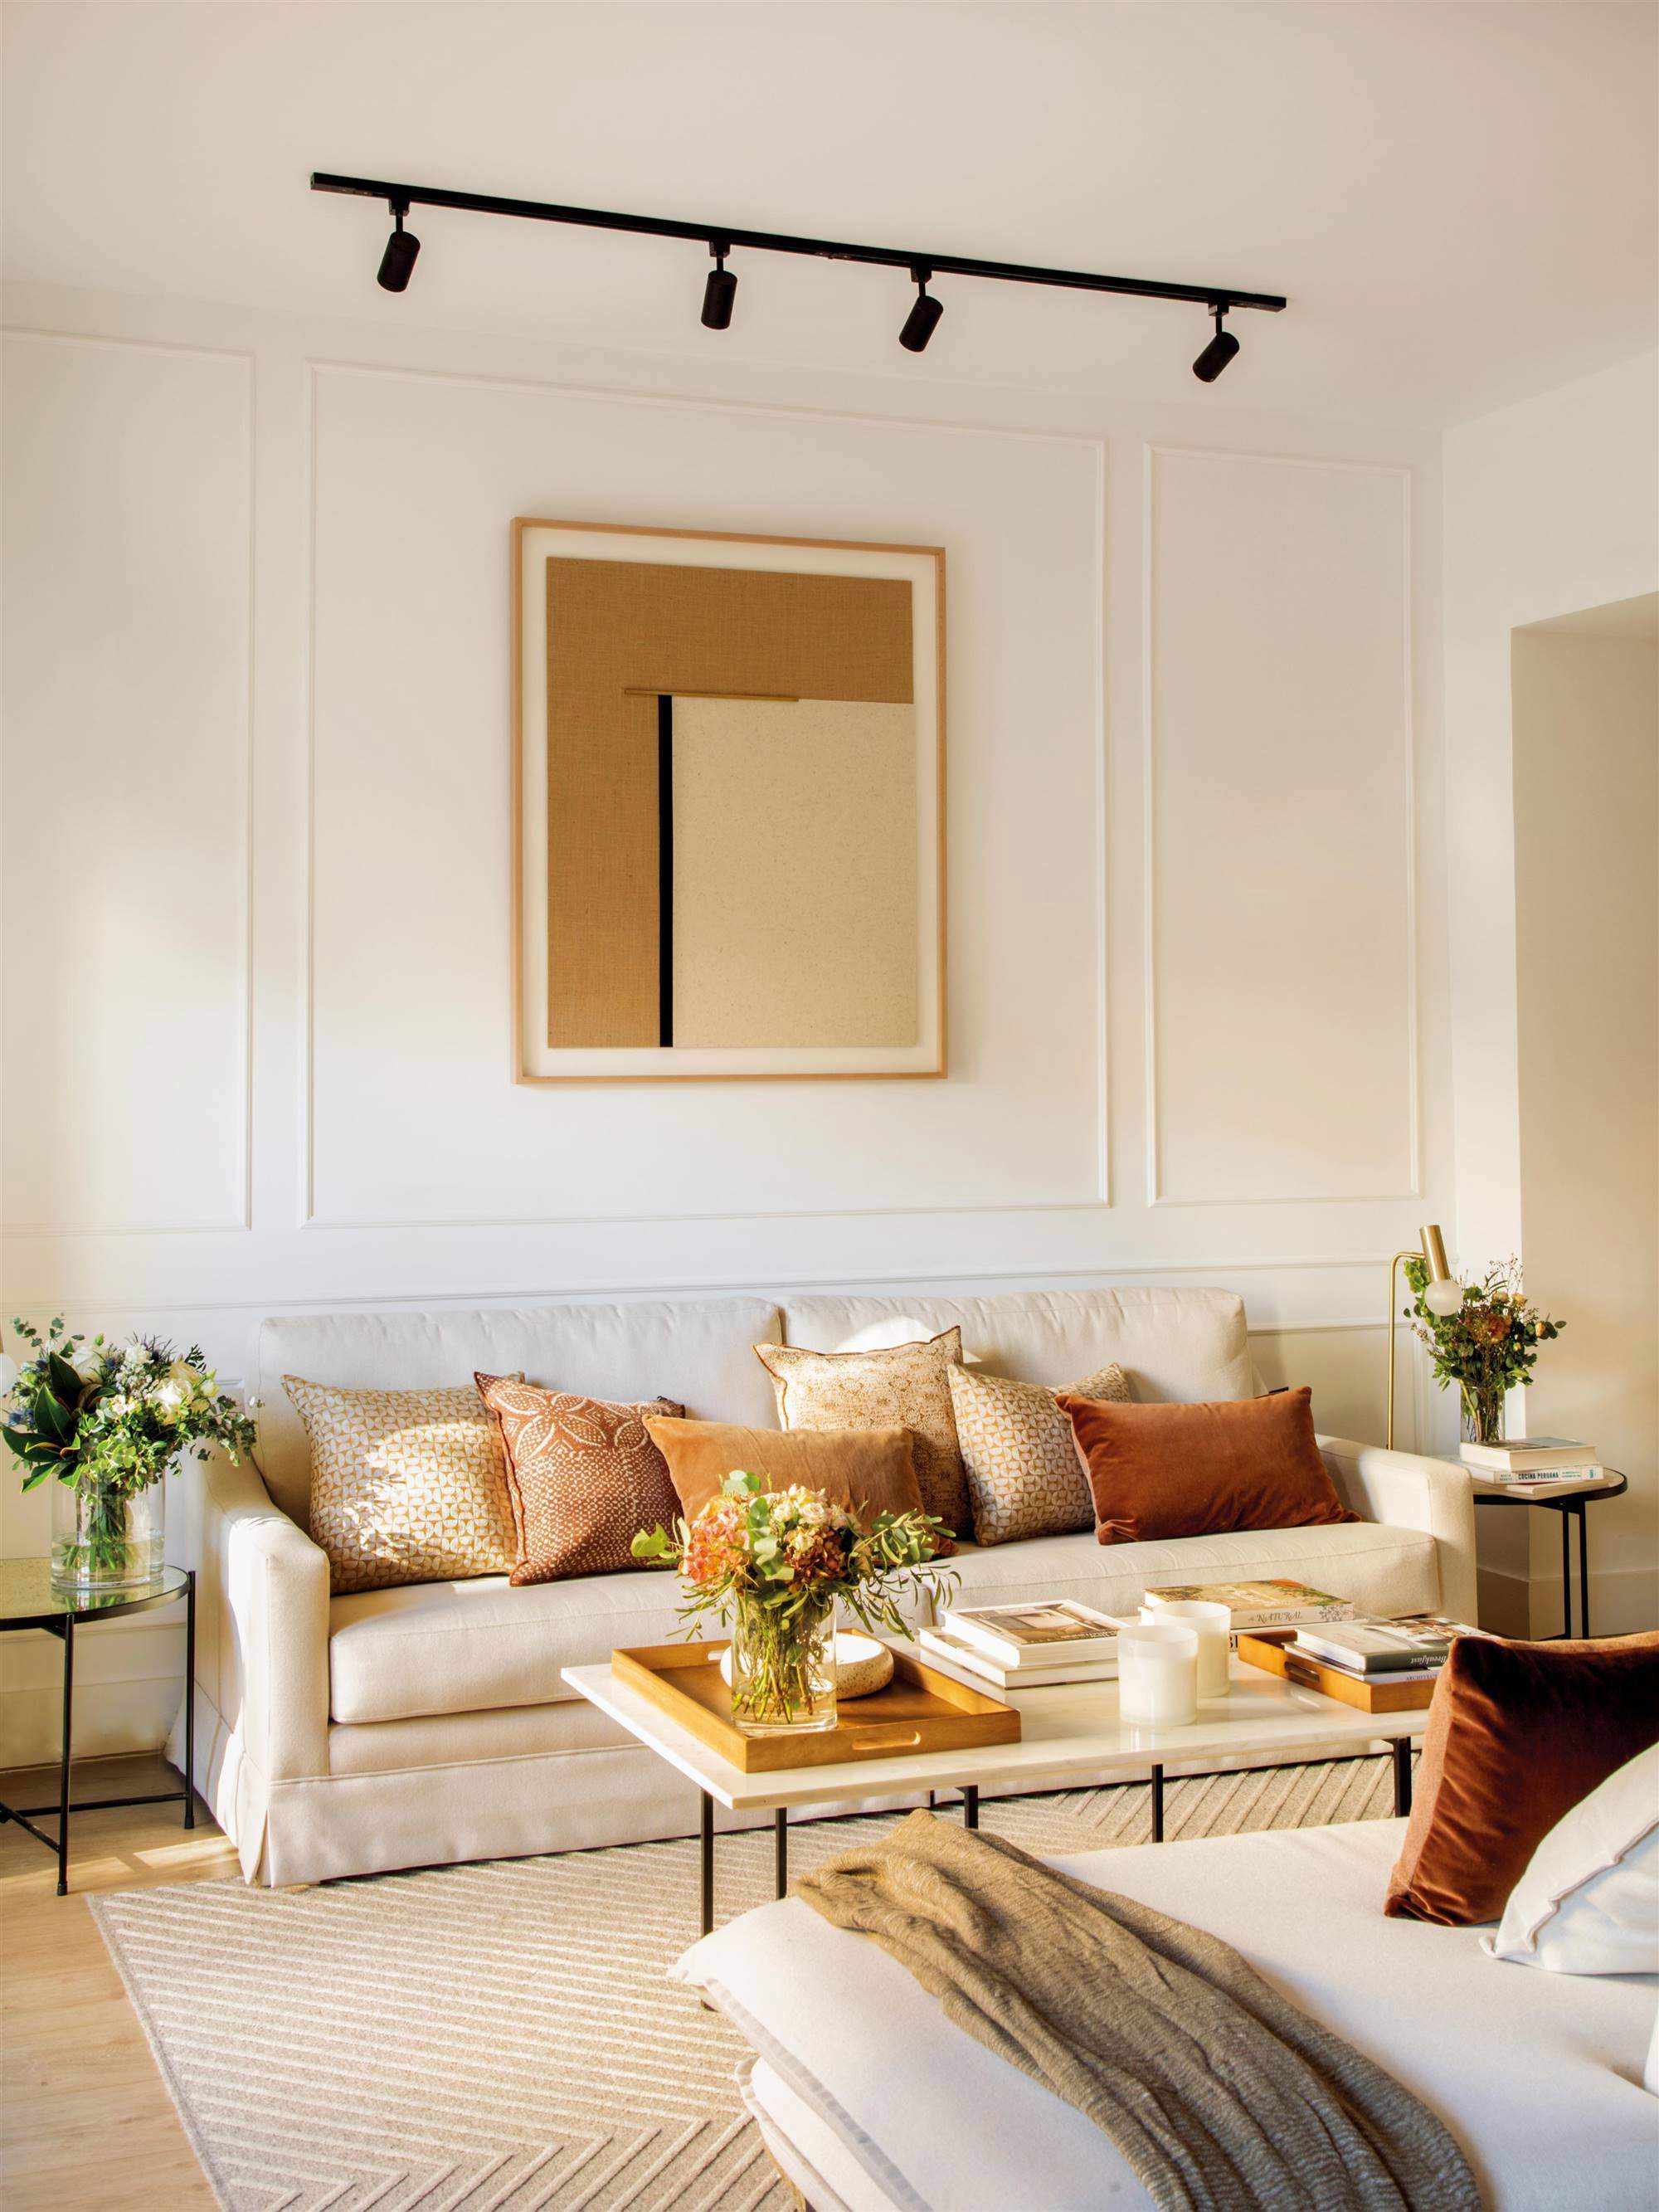 Salón con sofá, molduras en pared y cuadro con iluminación.